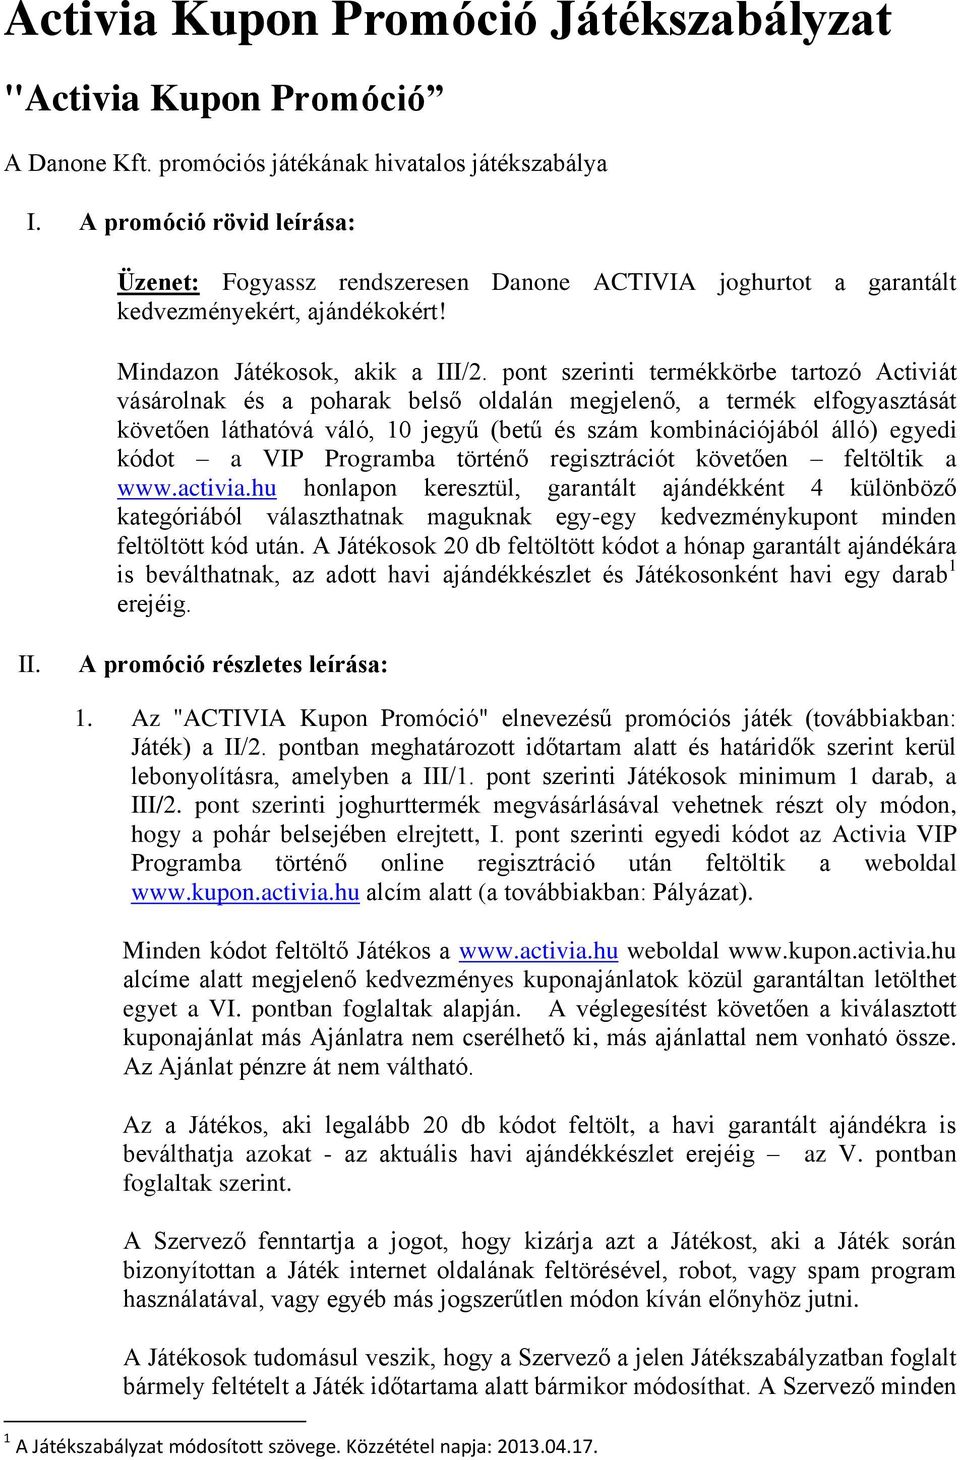 Activia Kupon Promóció Játékszabályzat - PDF Free Download